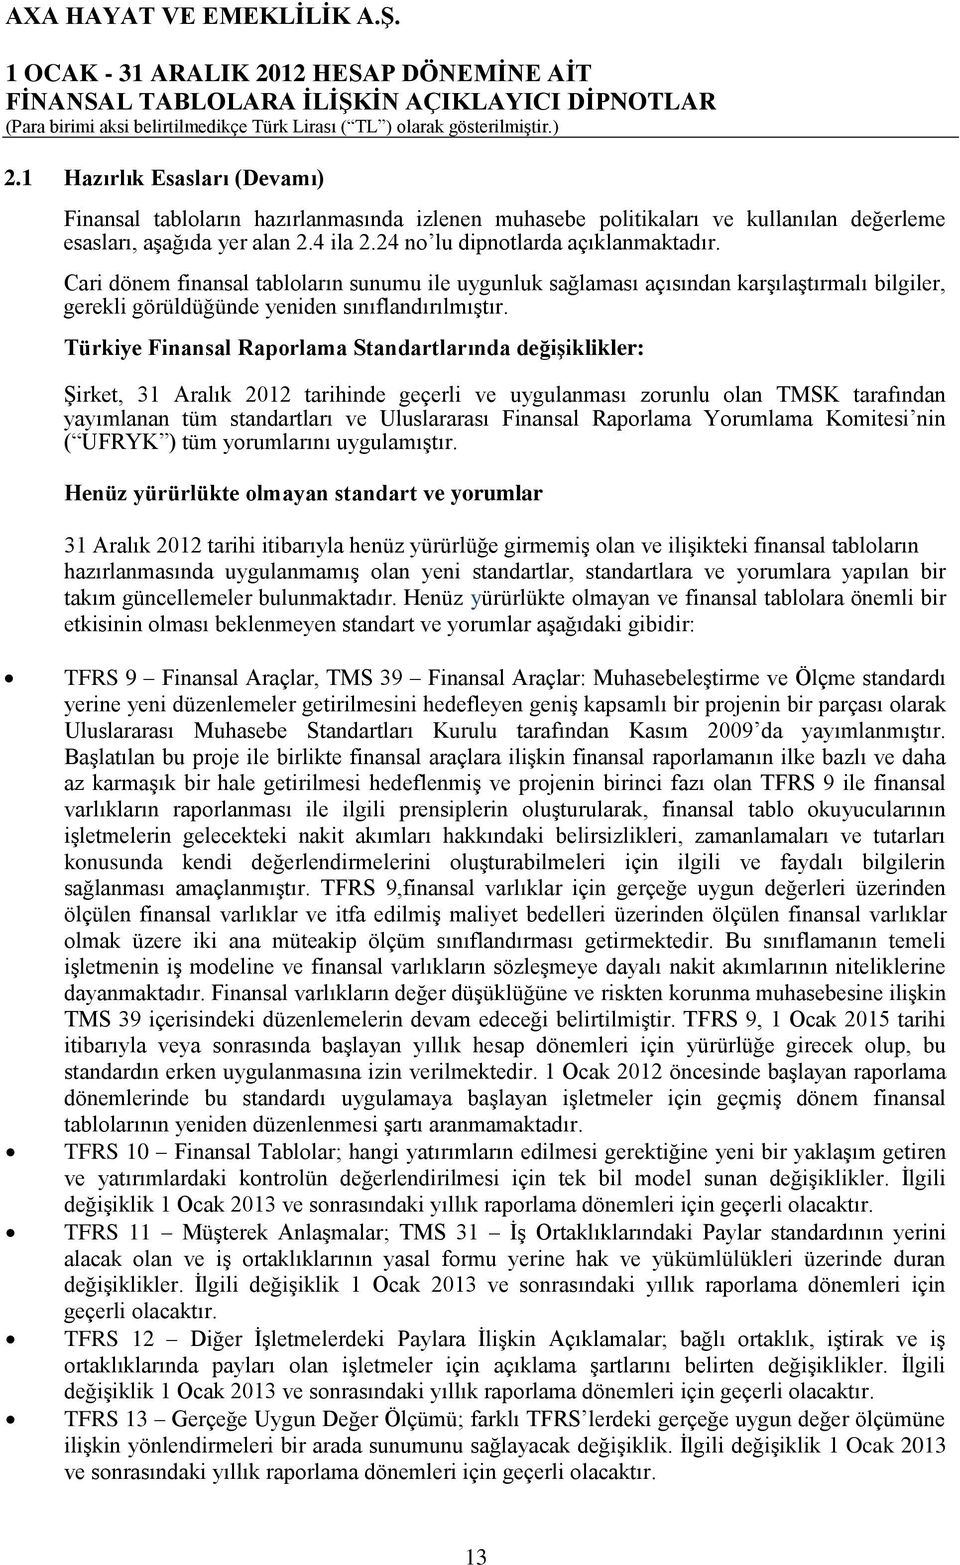 Türkiye Finansal Raporlama Standartlarında değişiklikler: Şirket, 31 Aralık 2012 tarihinde geçerli ve uygulanması zorunlu olan TMSK tarafından yayımlanan tüm standartları ve Uluslararası Finansal